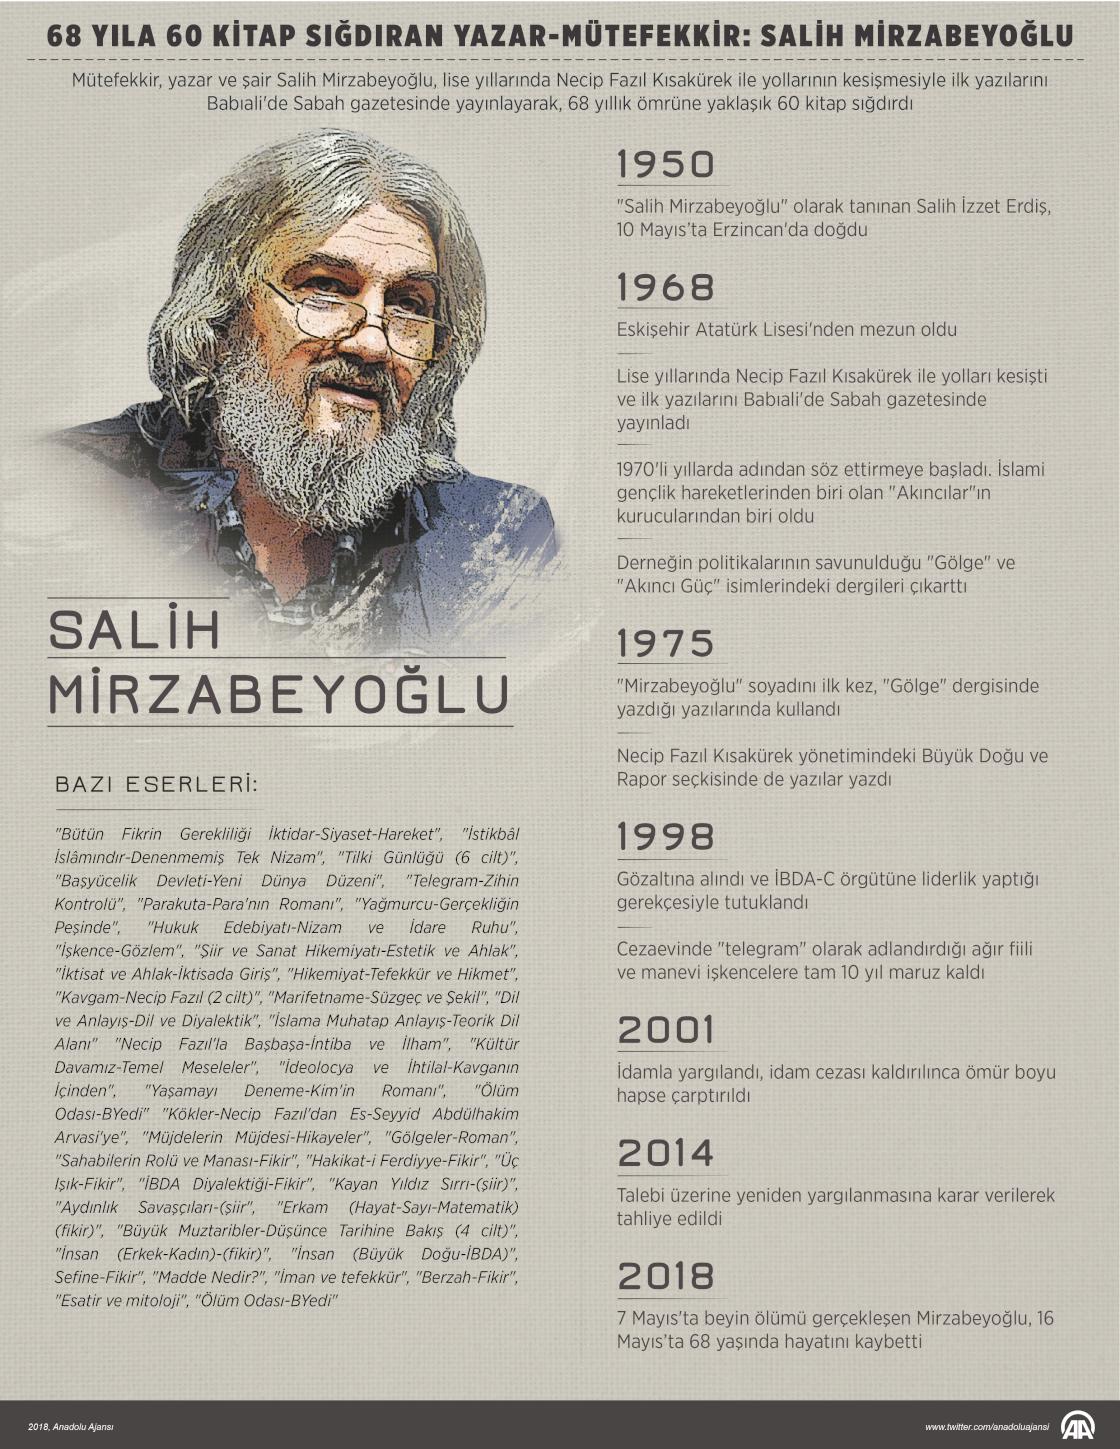 68 yıla 60 kitap sığdıran yazar-mütefekkir: Salih Mirzabeyoğlu